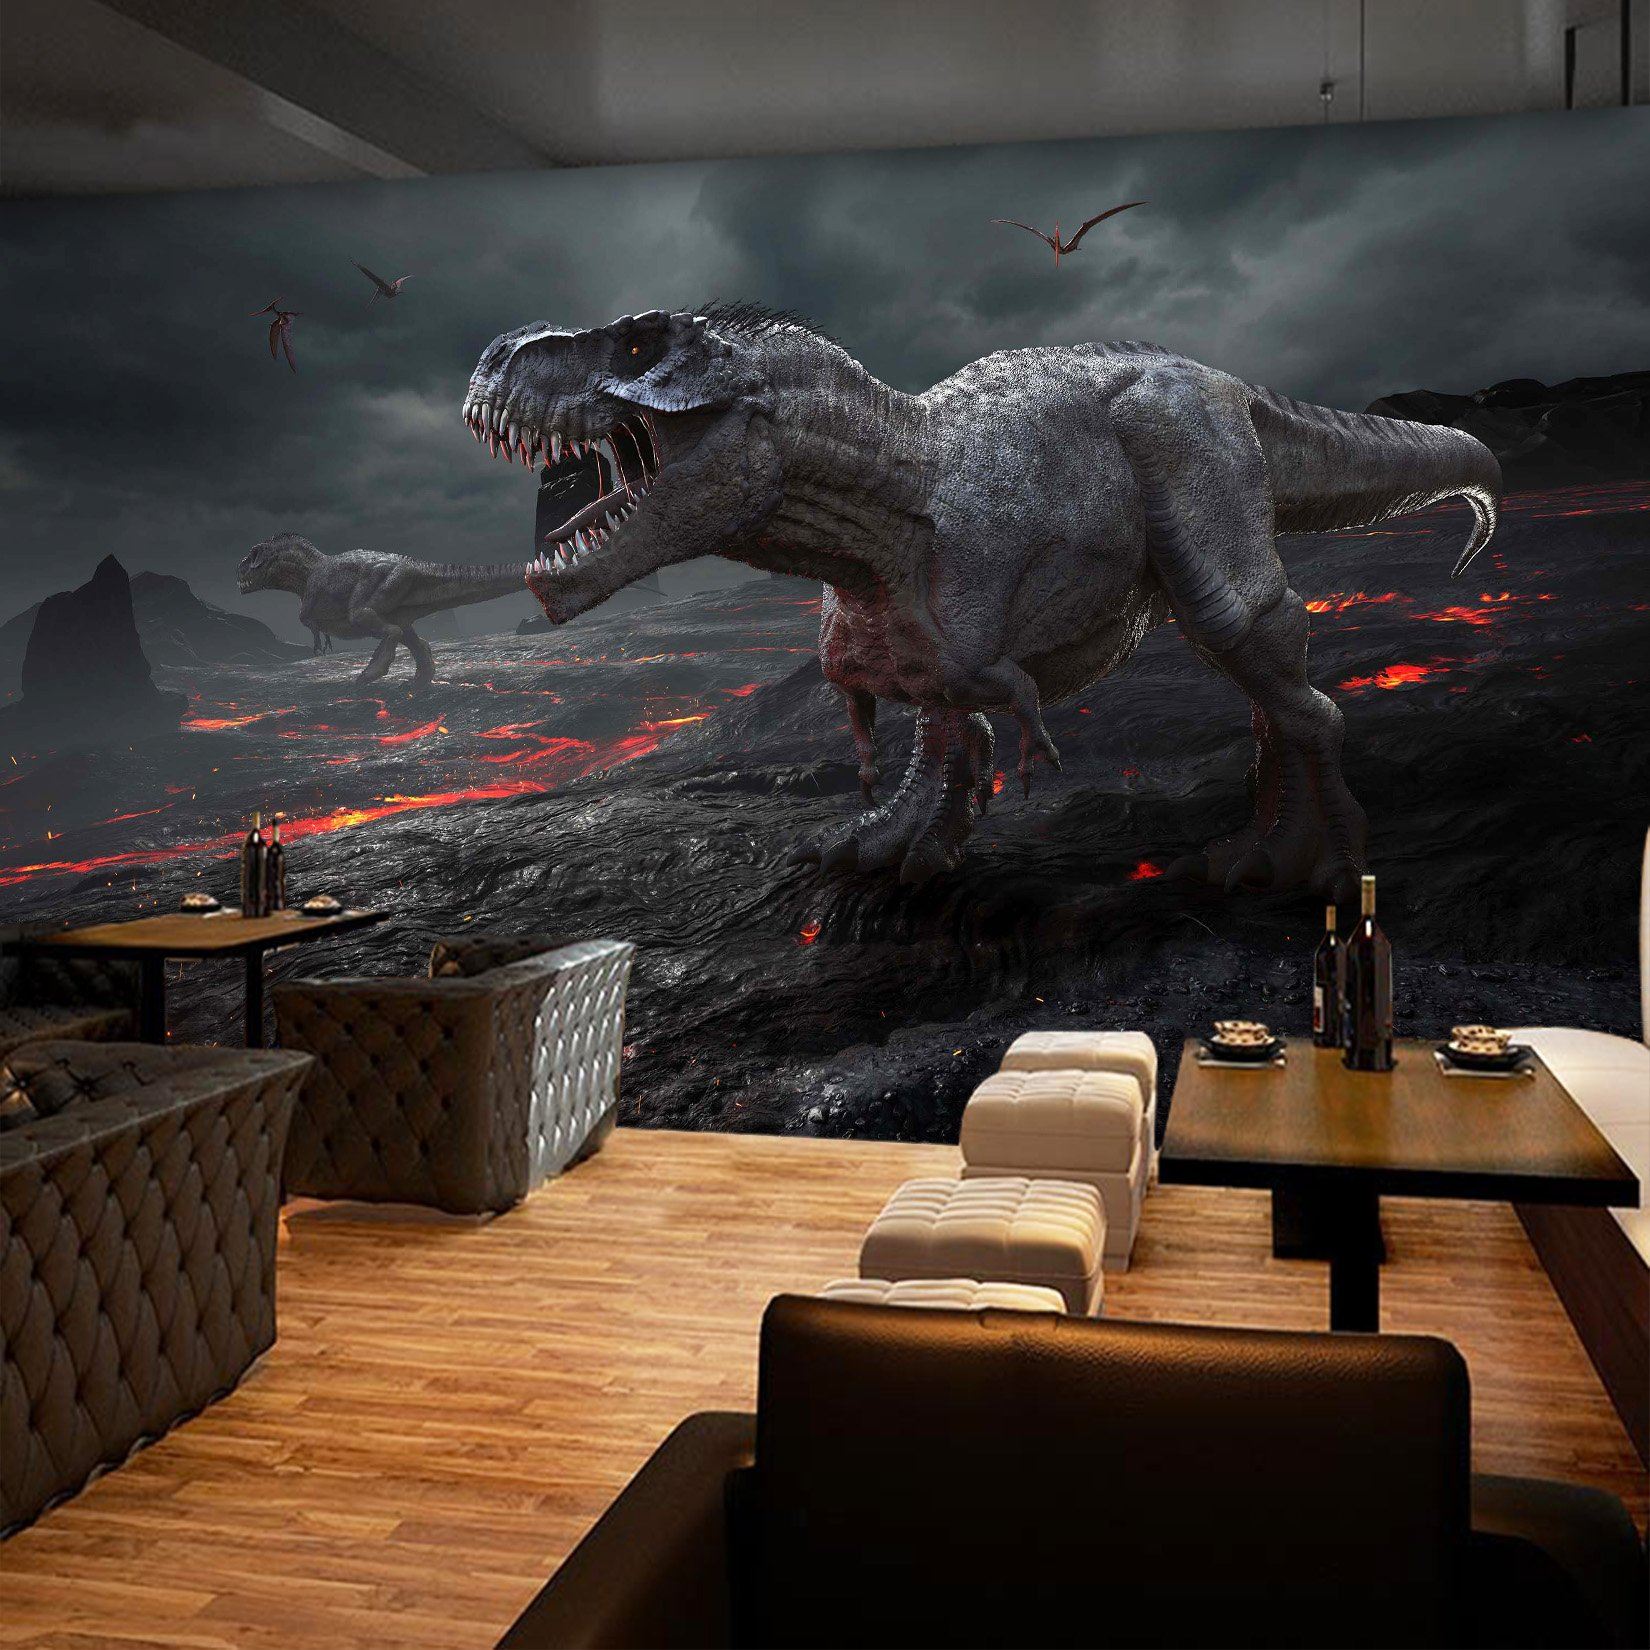 3D Volcanic Dinosaur 219 Wallpaper AJ Wallpaper 